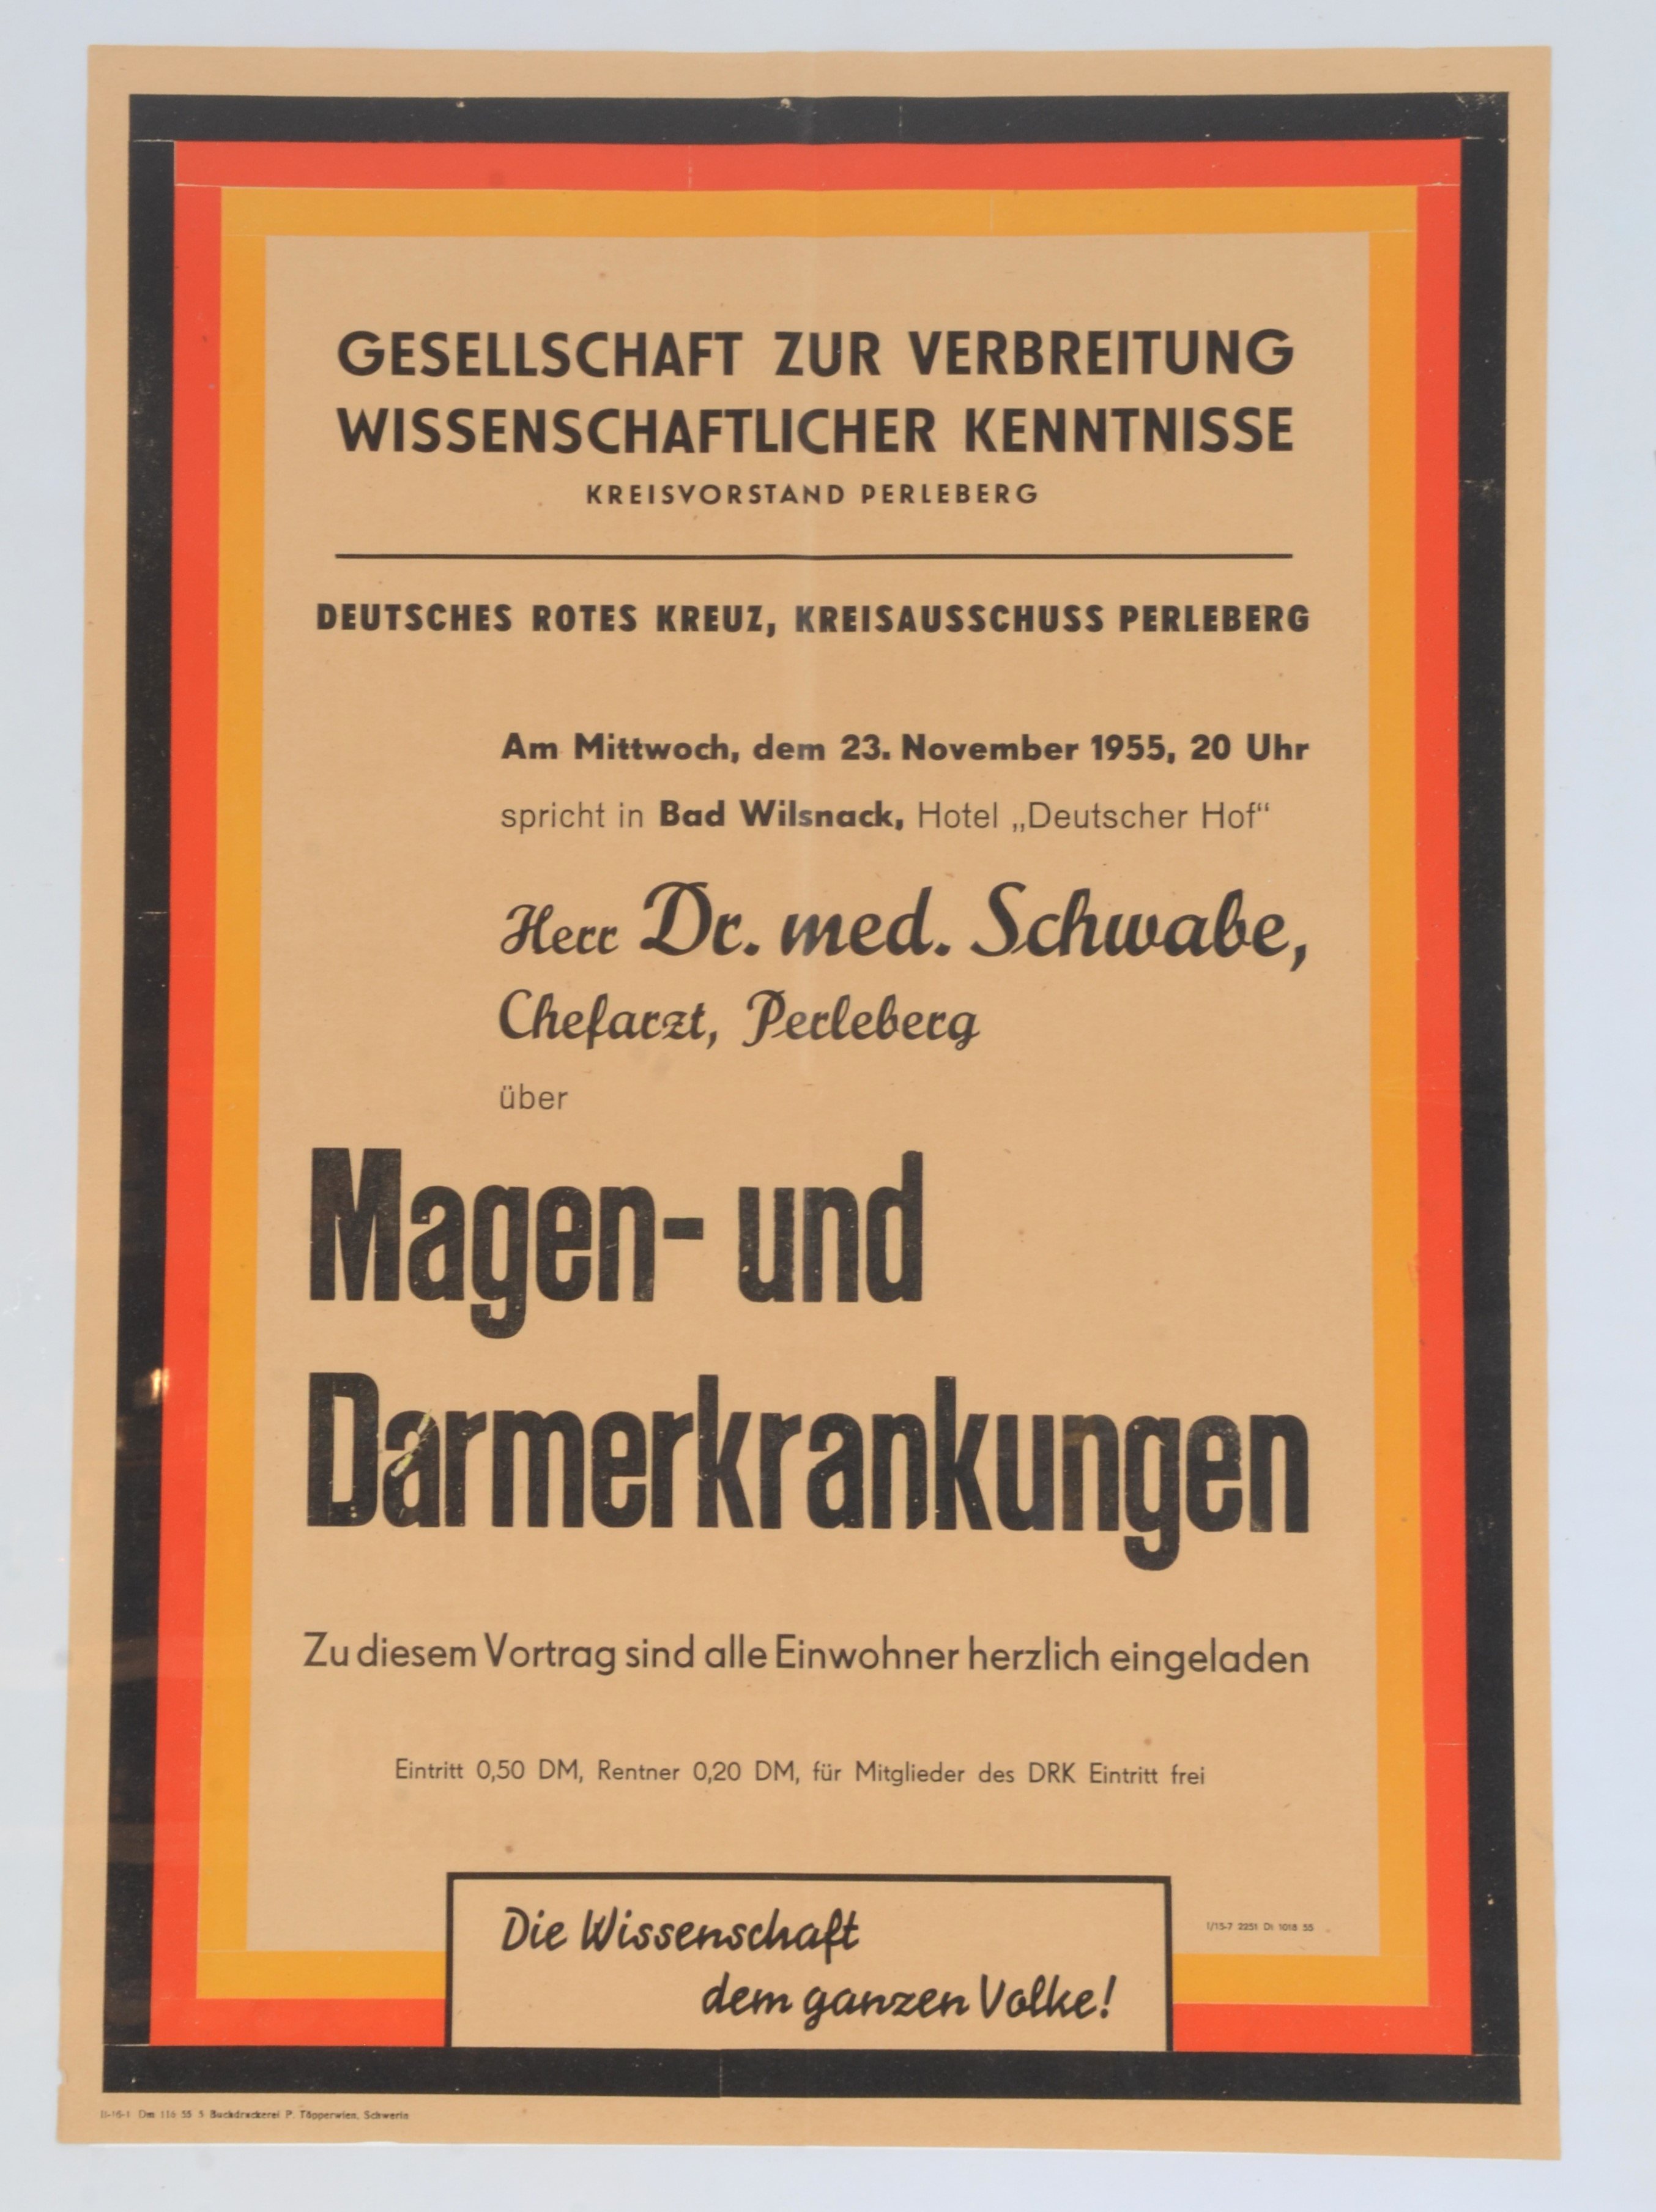 Veranstaltungsplakat: Magen- und Darmerkrankungen (DDR Geschichtsmuseum im Dokumentationszentrum Perleberg CC BY-SA)